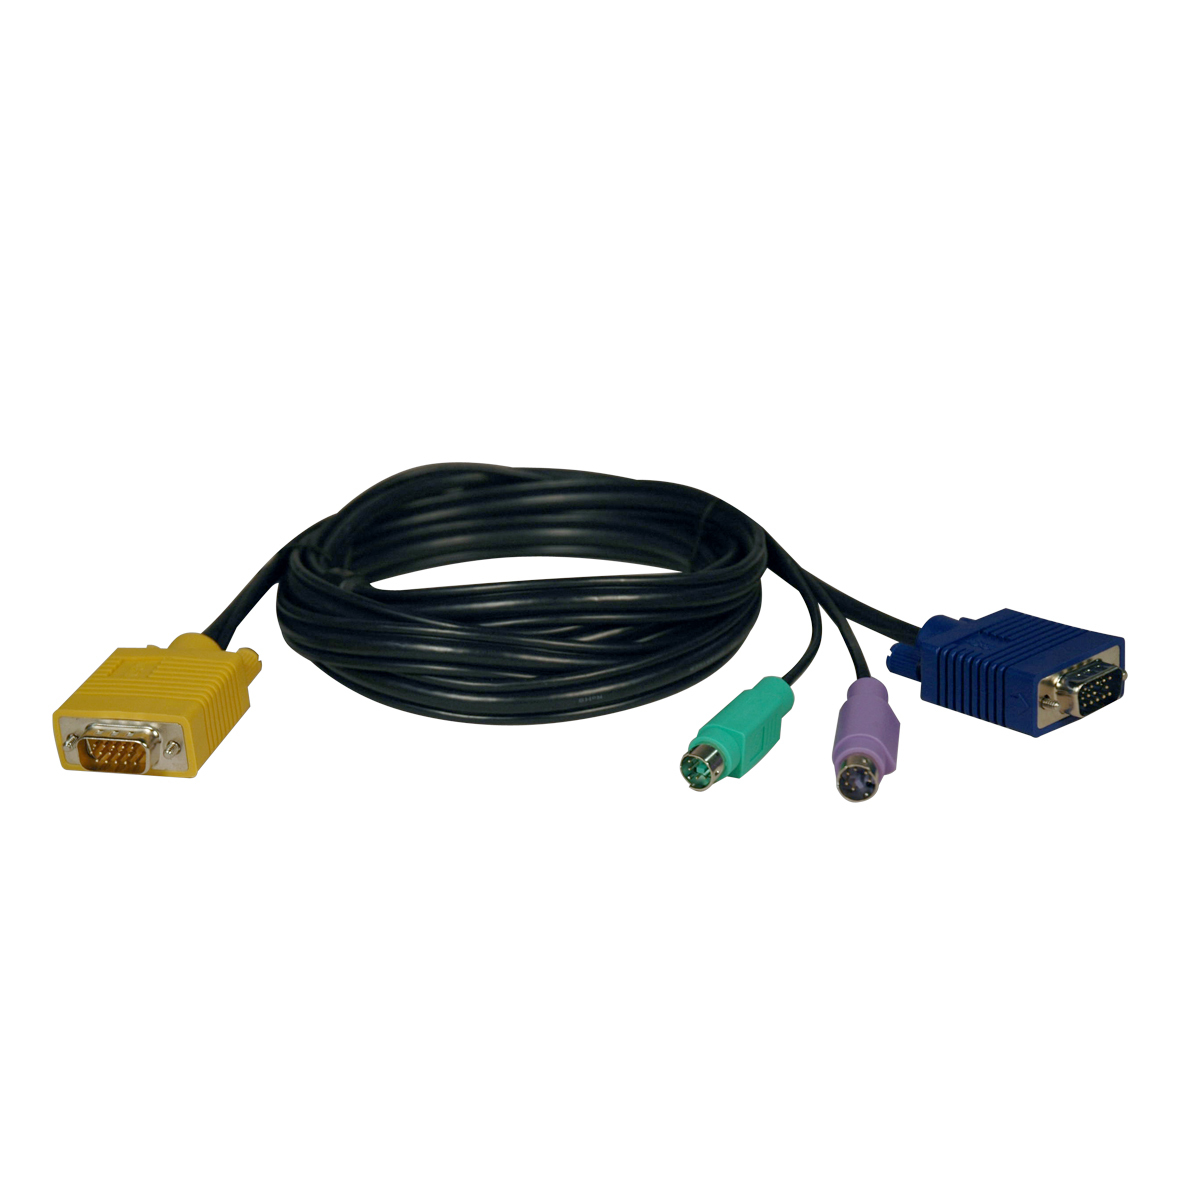 Cable Vga Tripp Lite Hd15 Macho A Hd15 Macho / (X2) Minidin6 M 1.8M